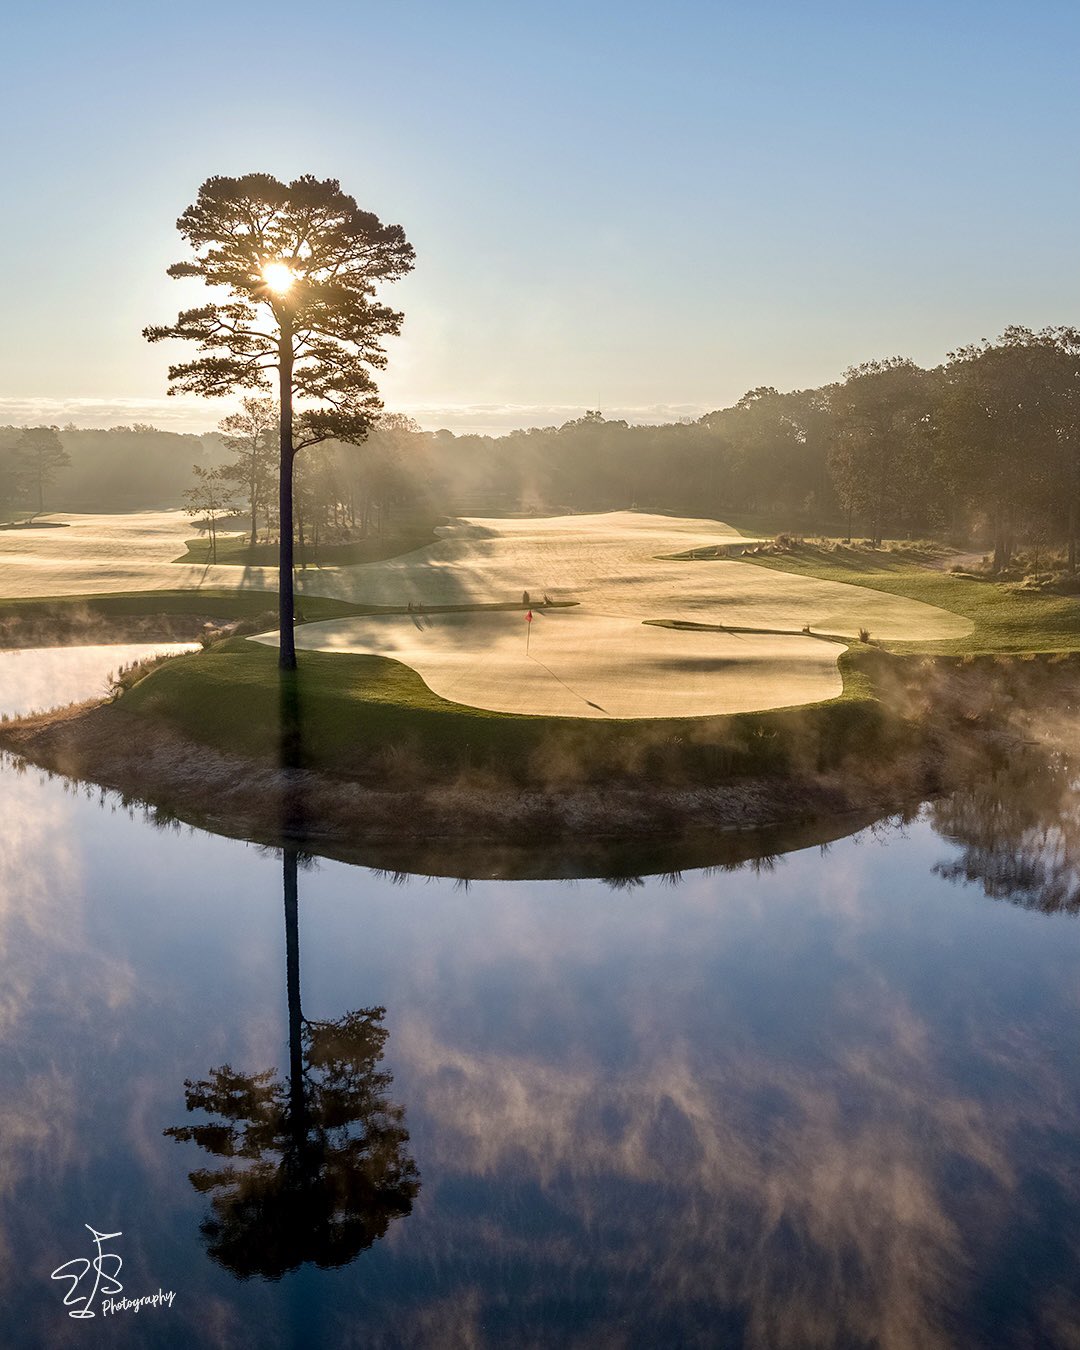 11th Hole, Aurora International Golf Club – Evan Schiller Photography